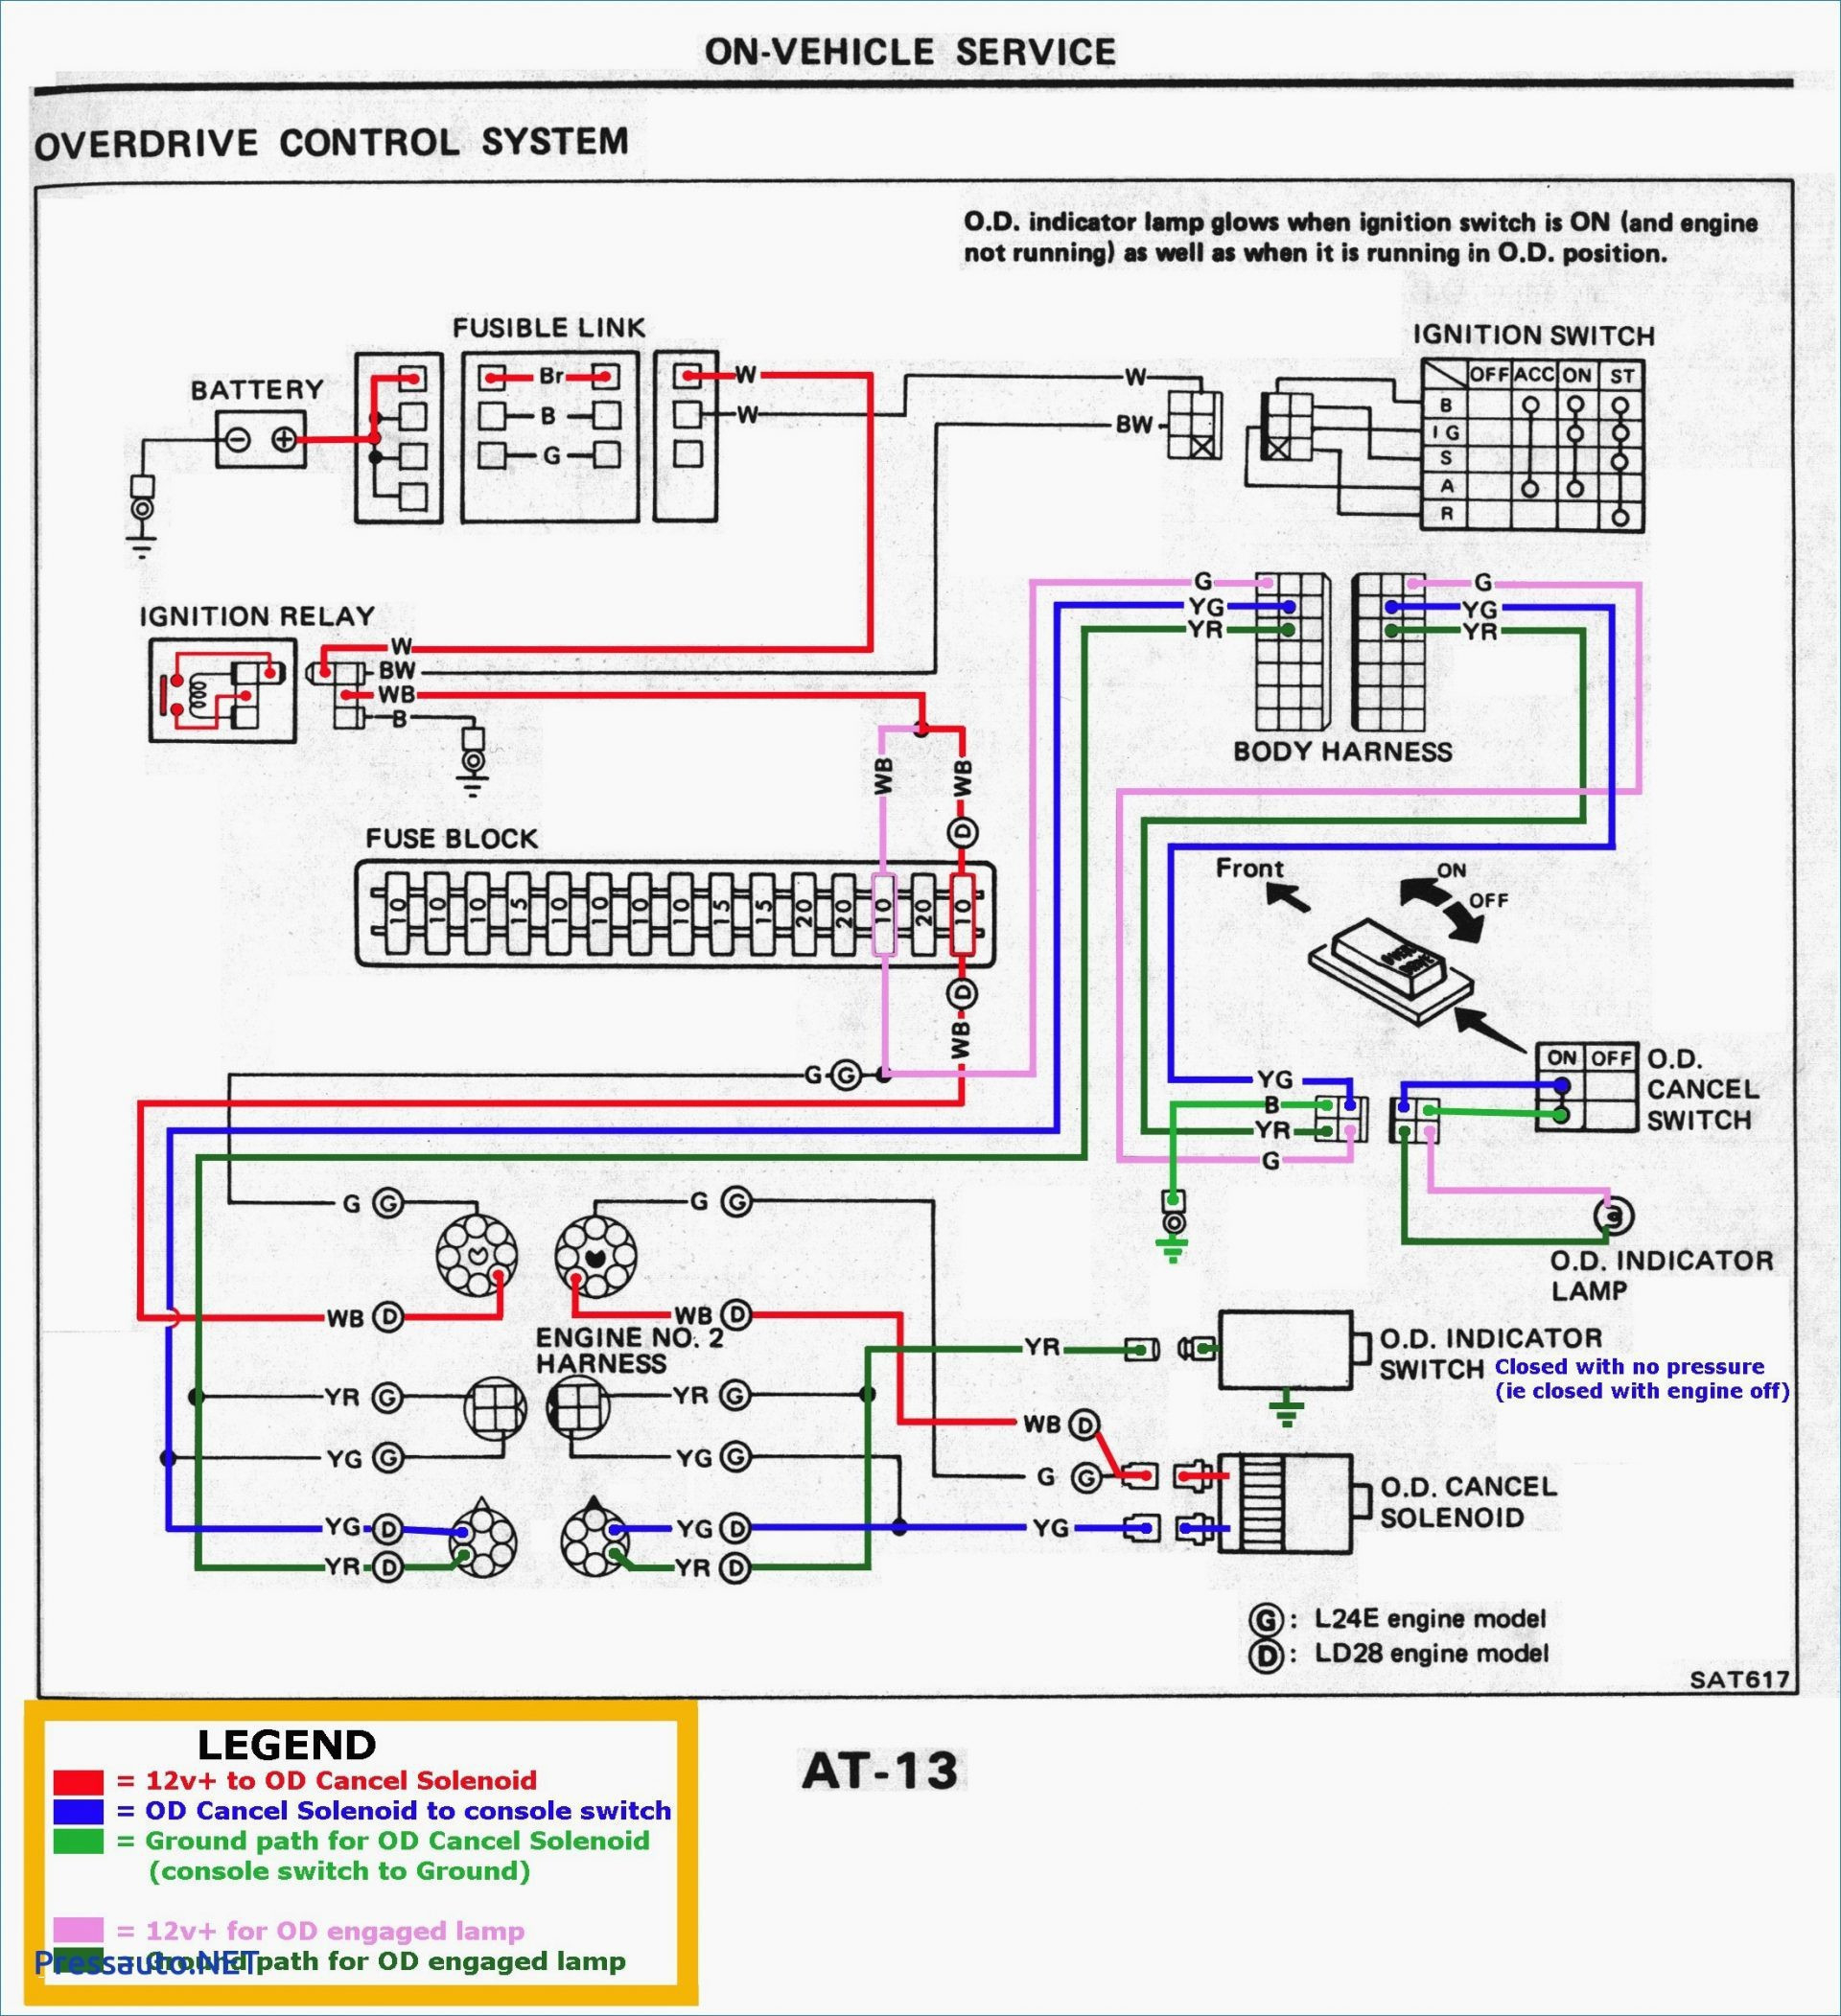 Gooseneck Trailer Plug Wiring Diagram